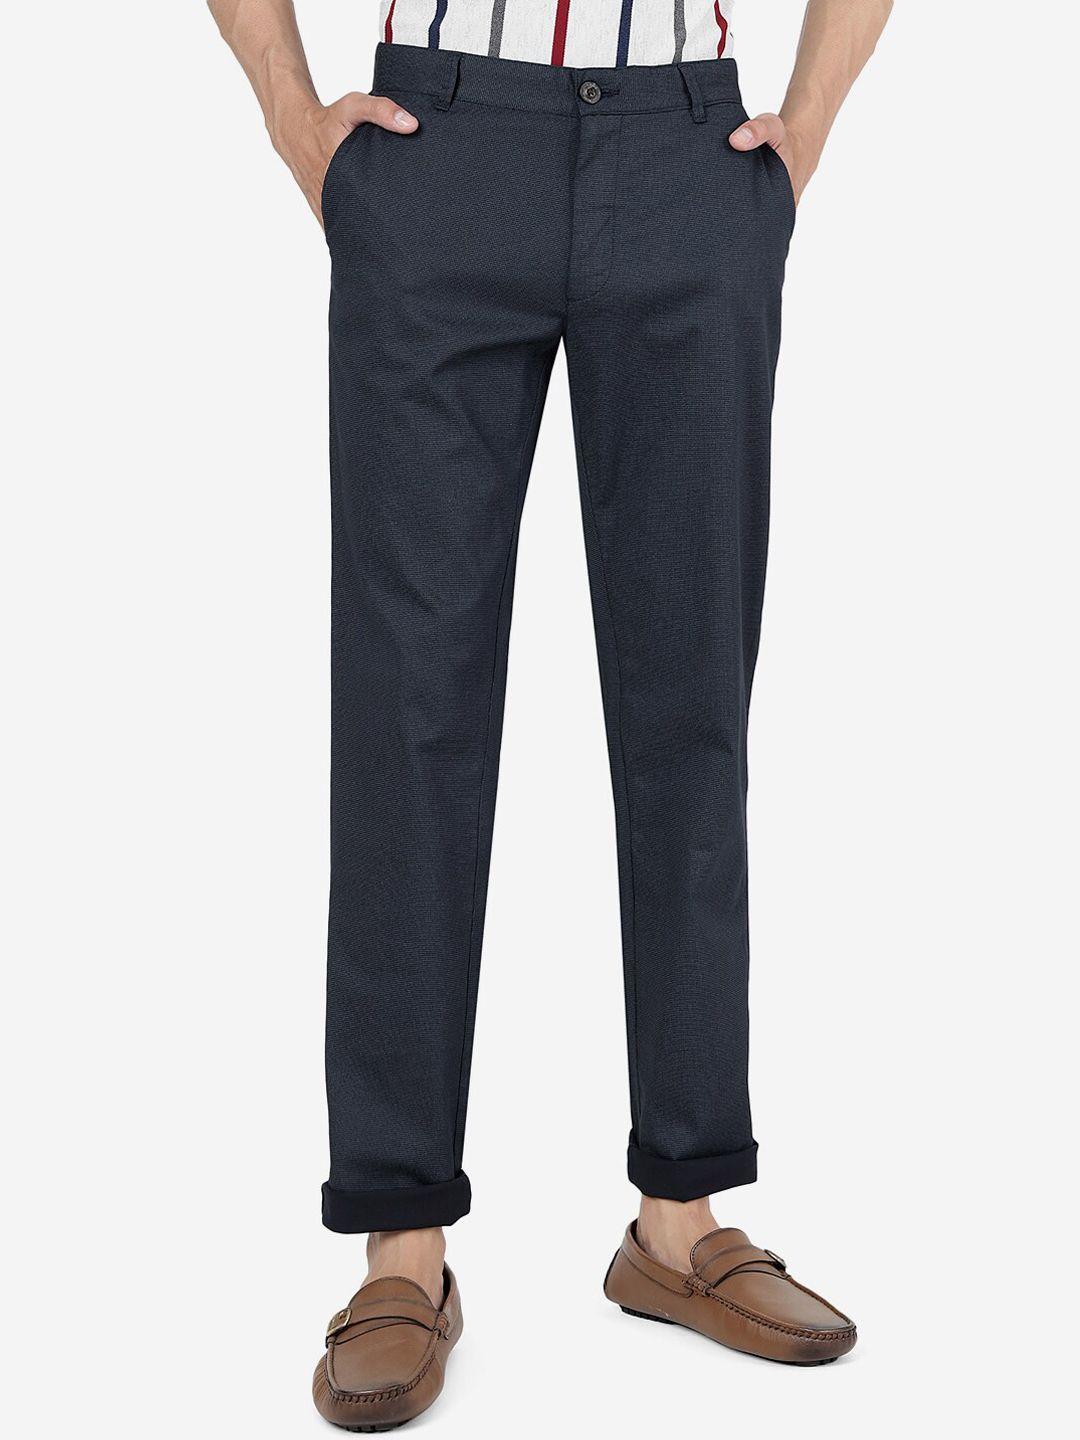 jade blue men mid rise plain self design pure cotton slim fit trousers